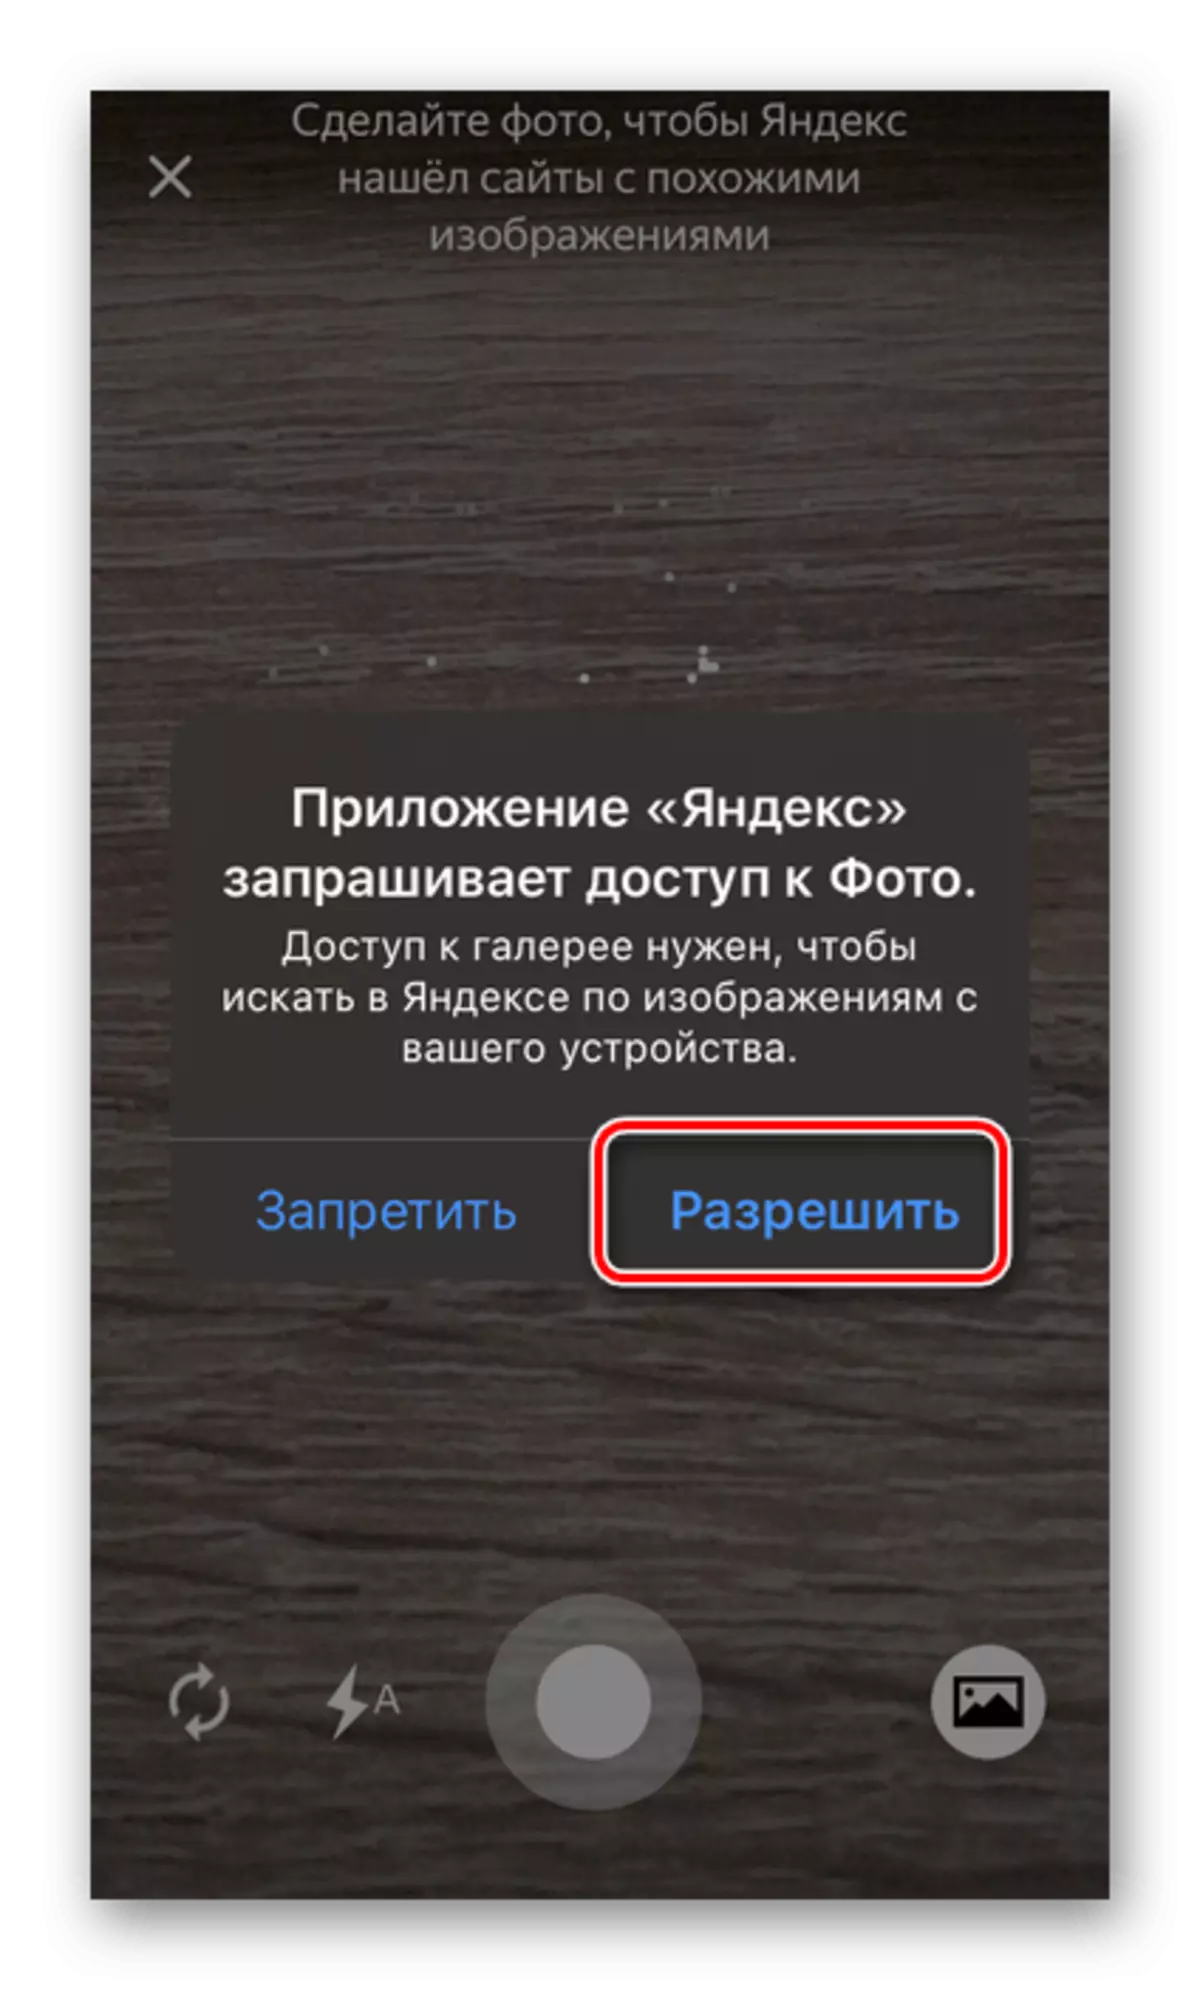 السماح بالوصول إلى الصورة في تطبيق Yandex على الهاتف